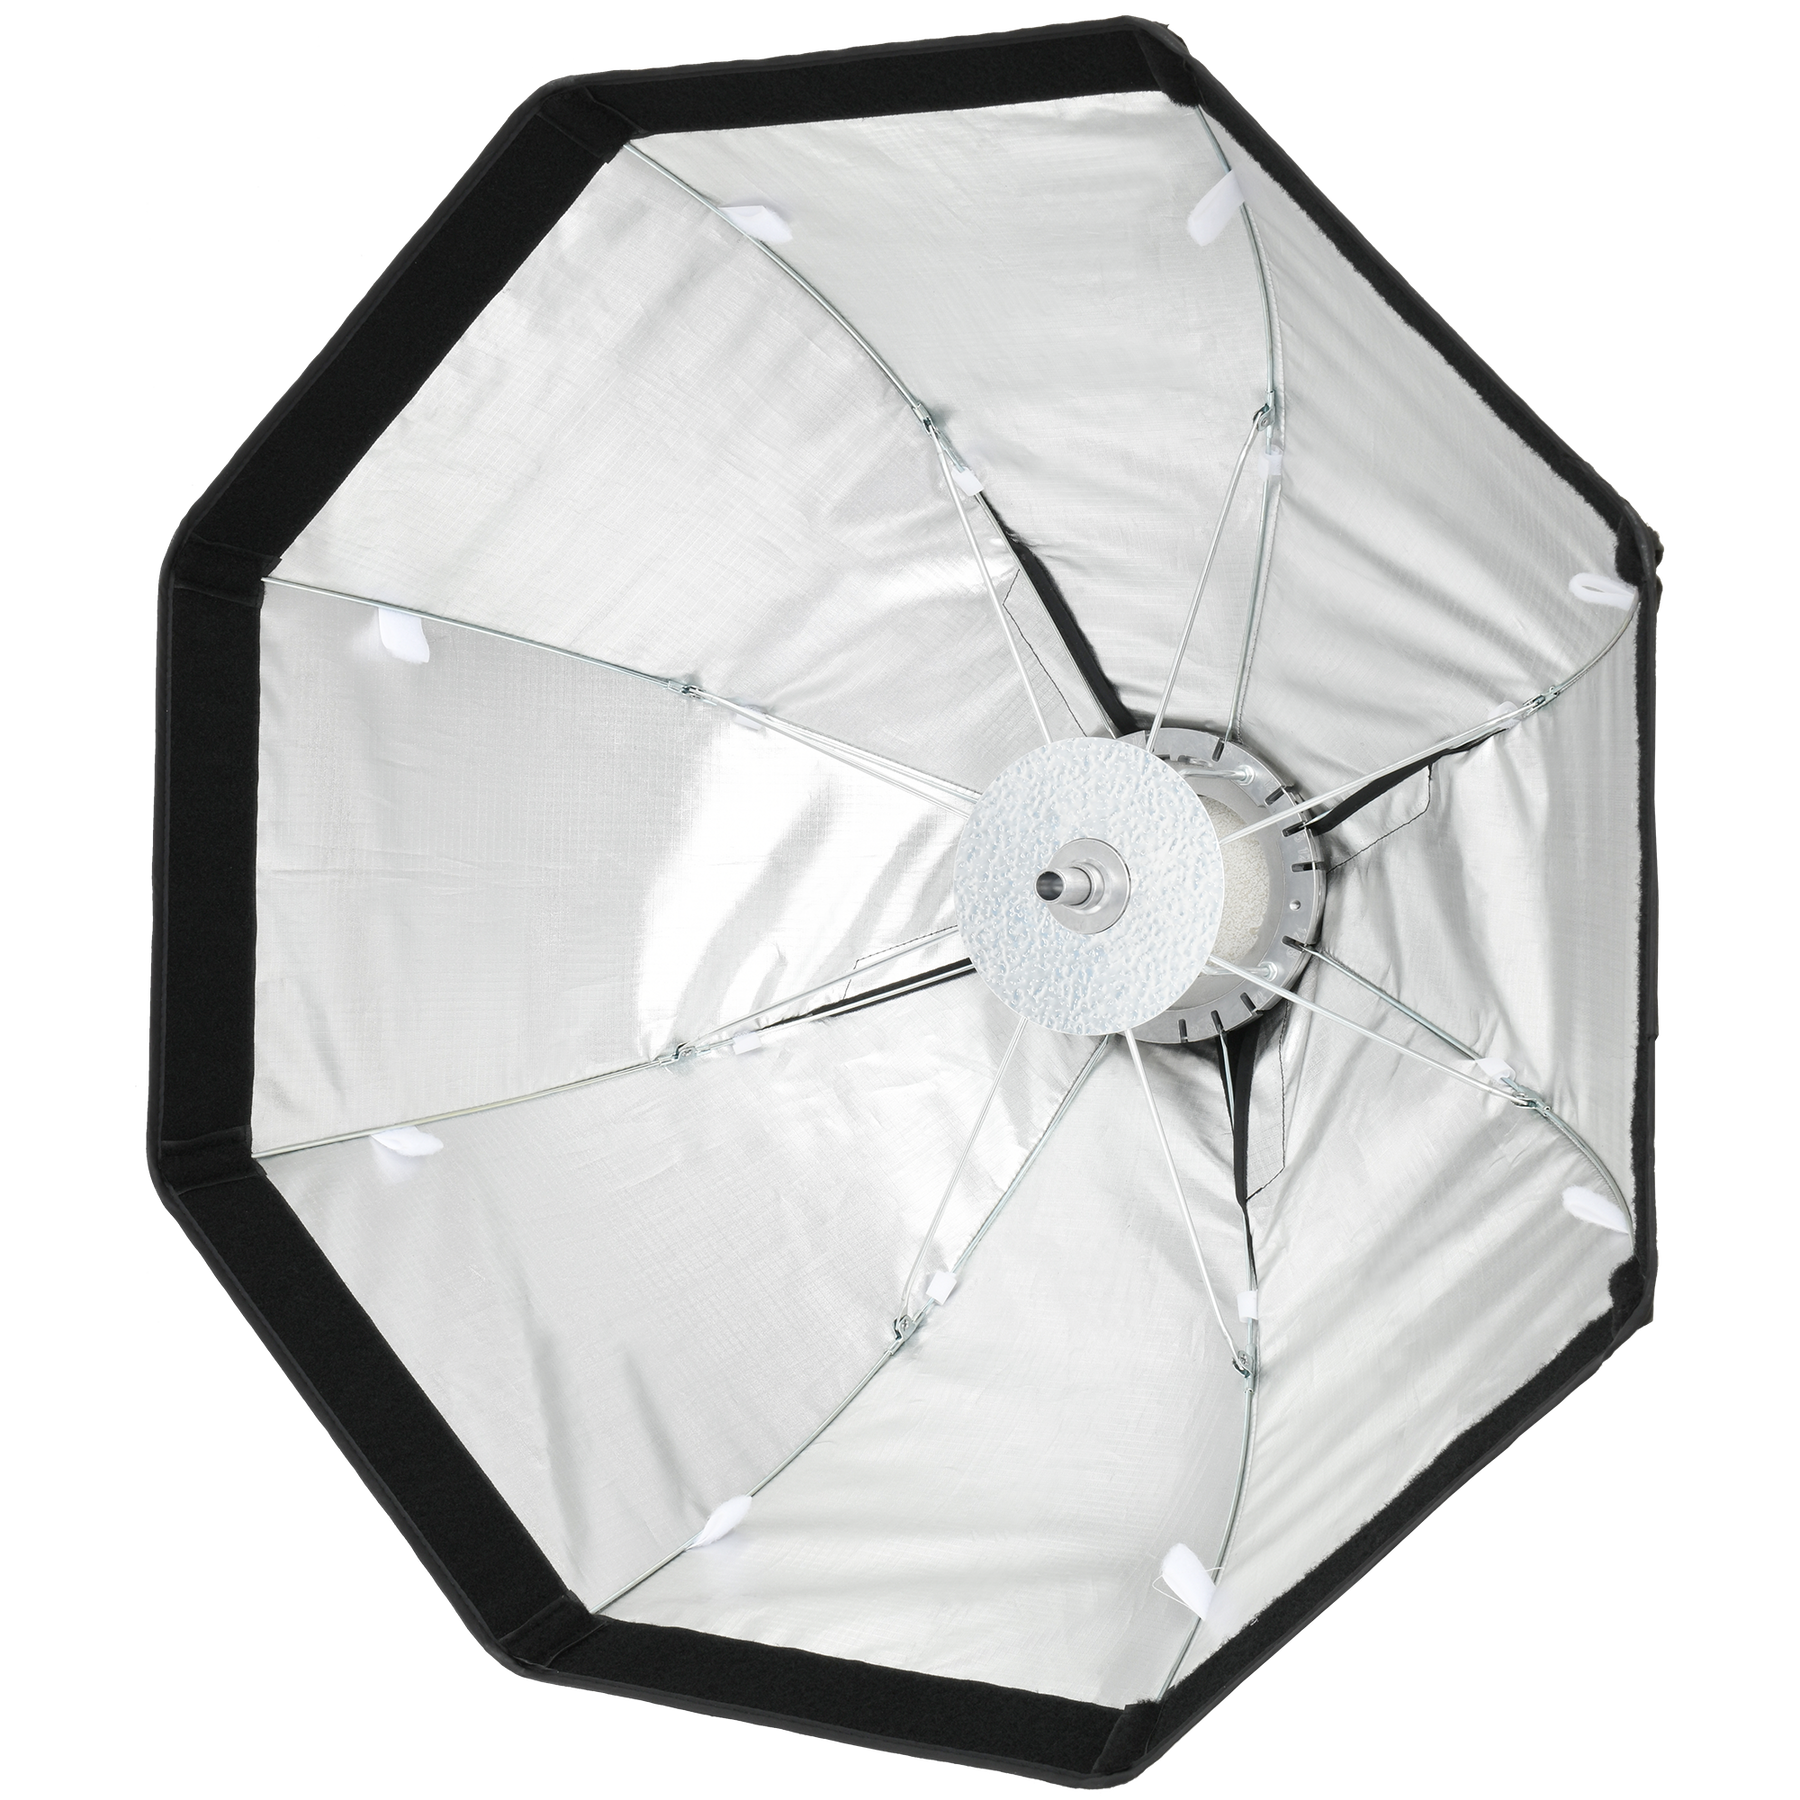 HD-60 Umbrella Octabox 60 cm